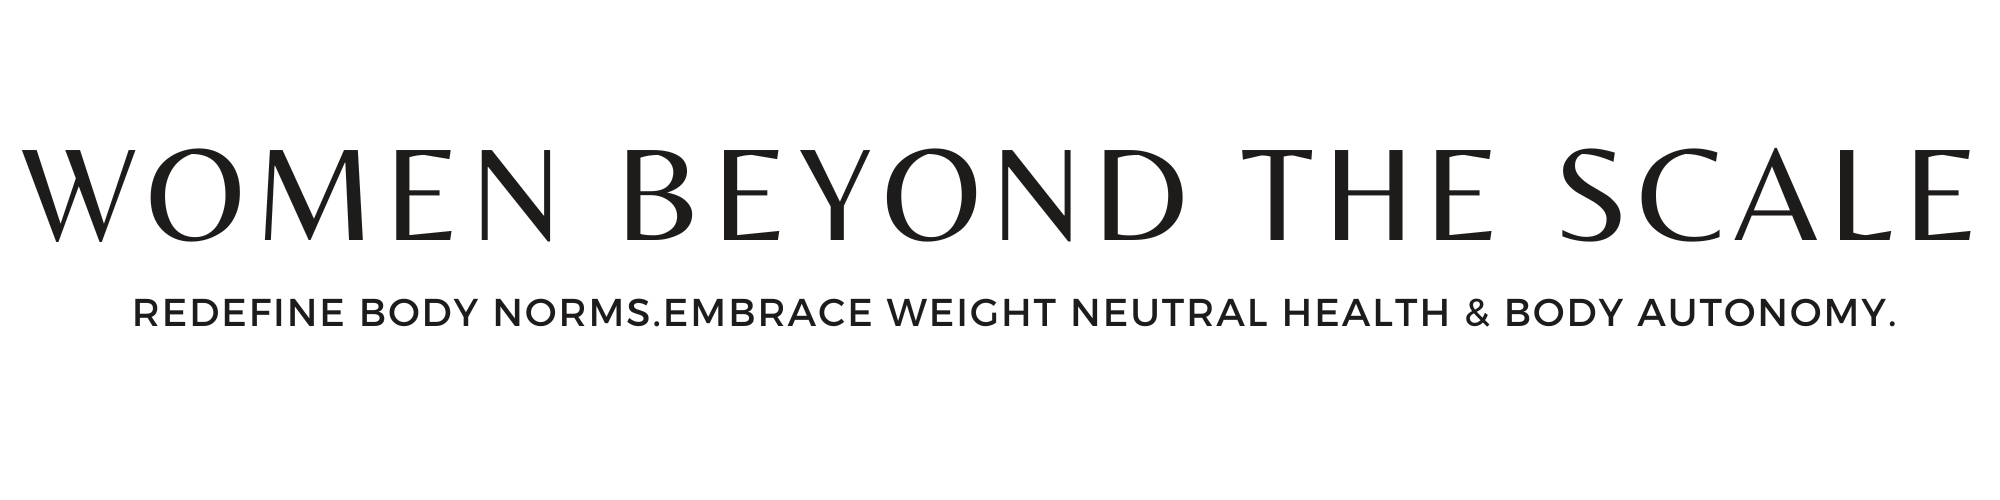 women beyond the scale logo black